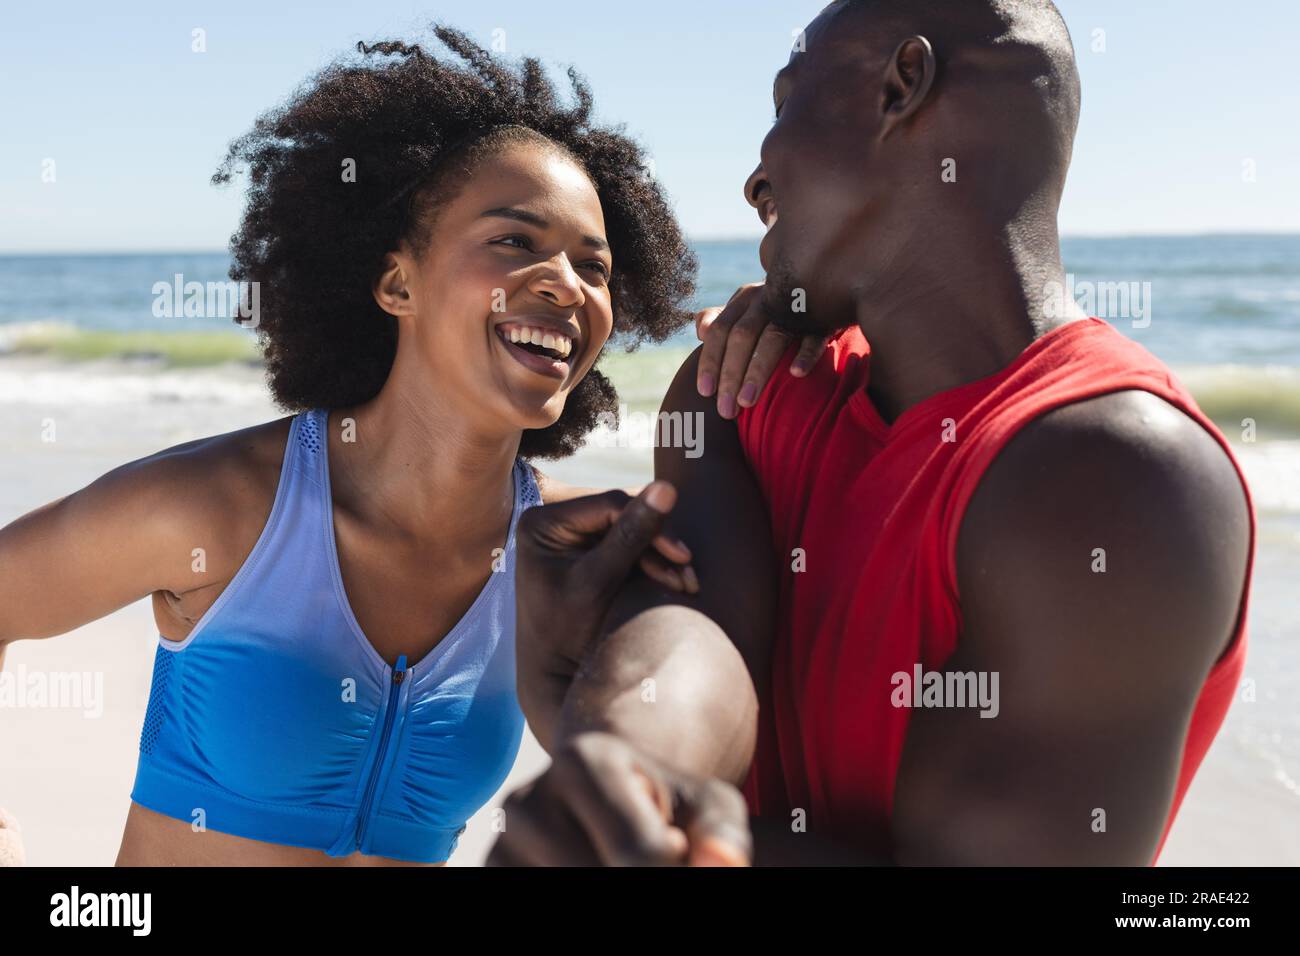 Coppia afro-americana in forma che si esercita, si allunga e sorride sulla spiaggia soleggiata Foto Stock